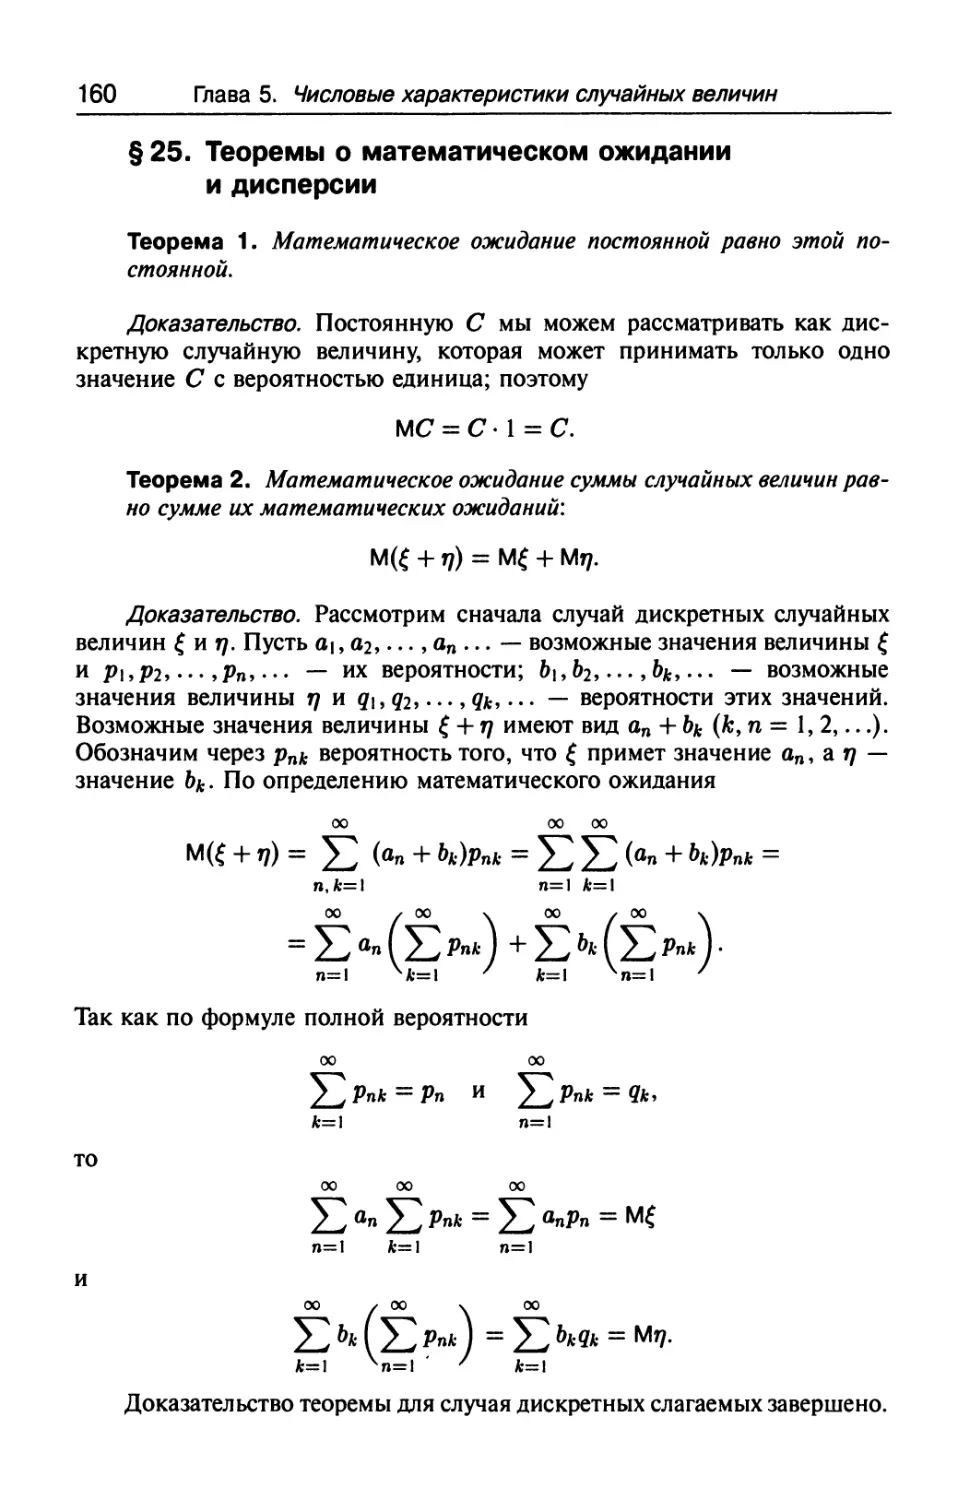 § 25. Теоремы о математическом ожидании и дисперсии